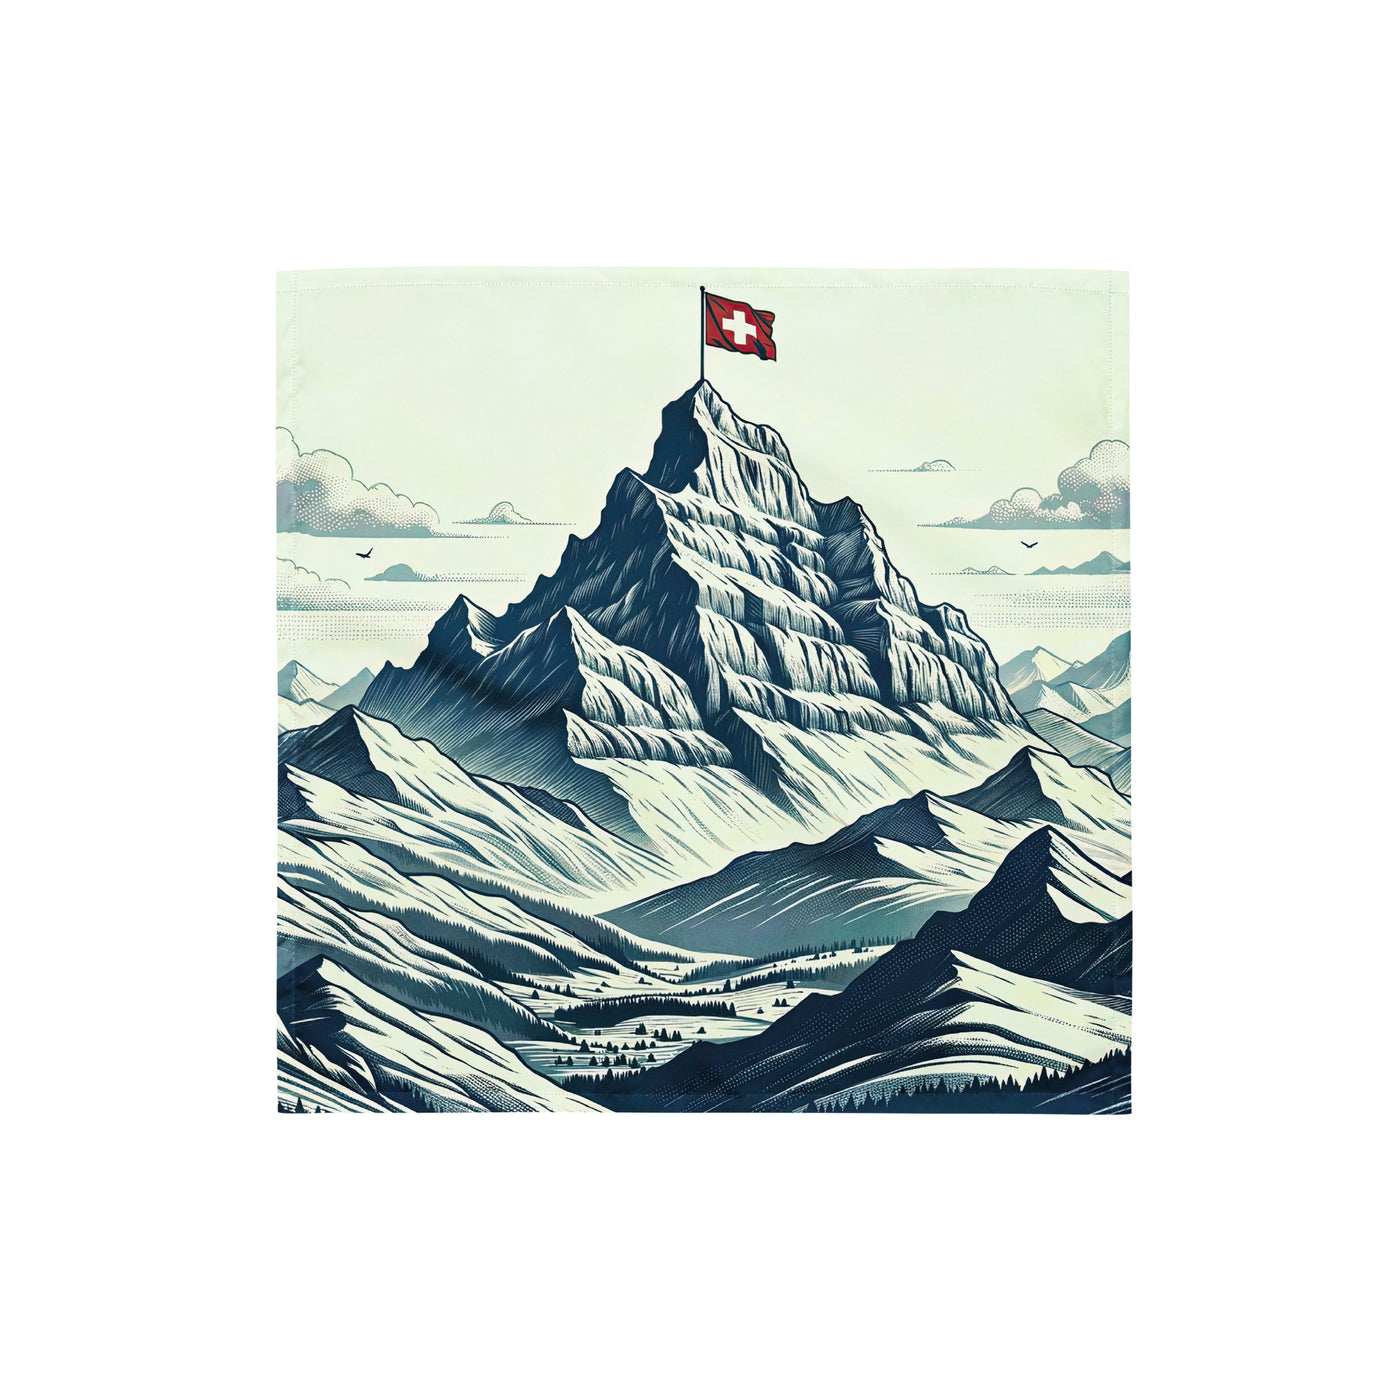 Ausgedehnte Bergkette mit dominierendem Gipfel und wehender Schweizer Flagge - Bandana (All-Over Print) berge xxx yyy zzz S